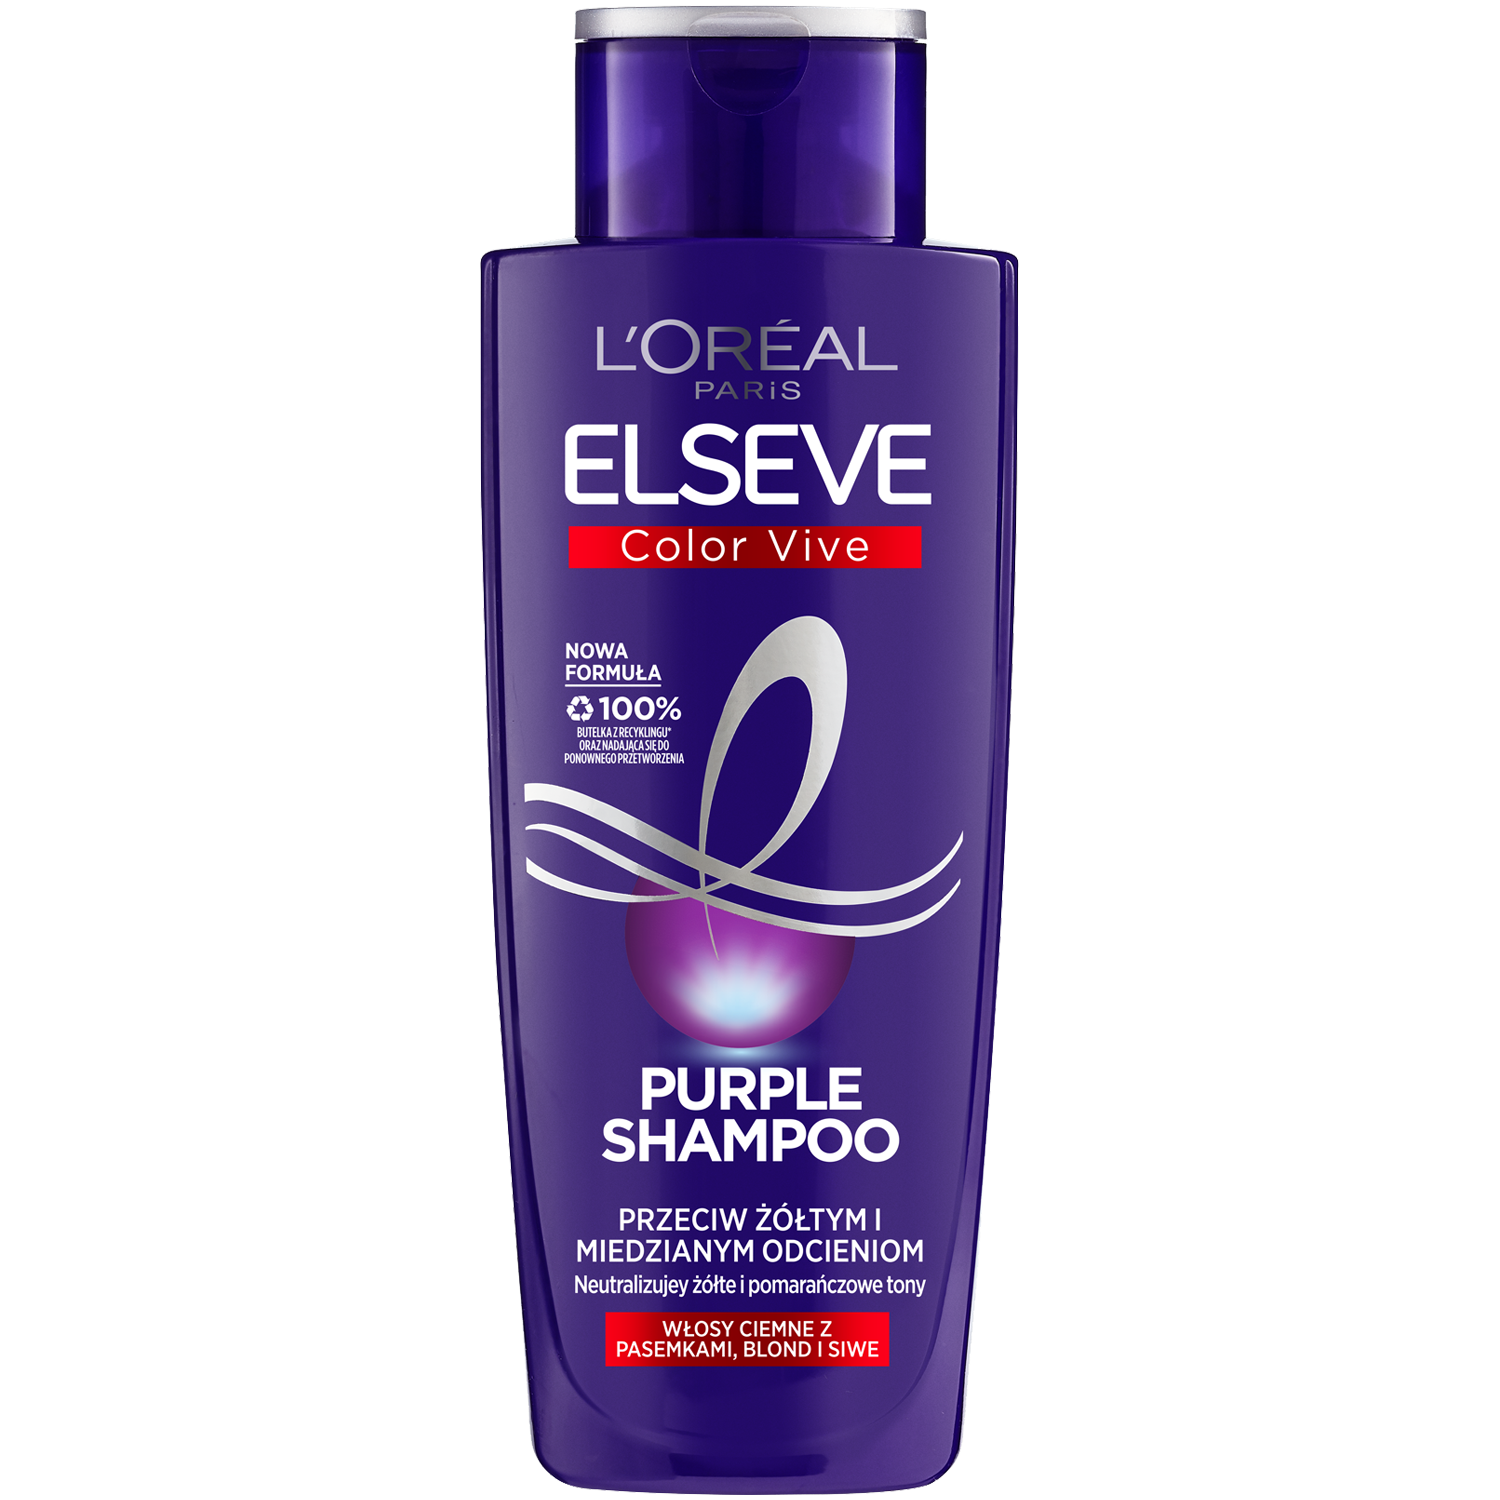 fioletowy szampon wizaz